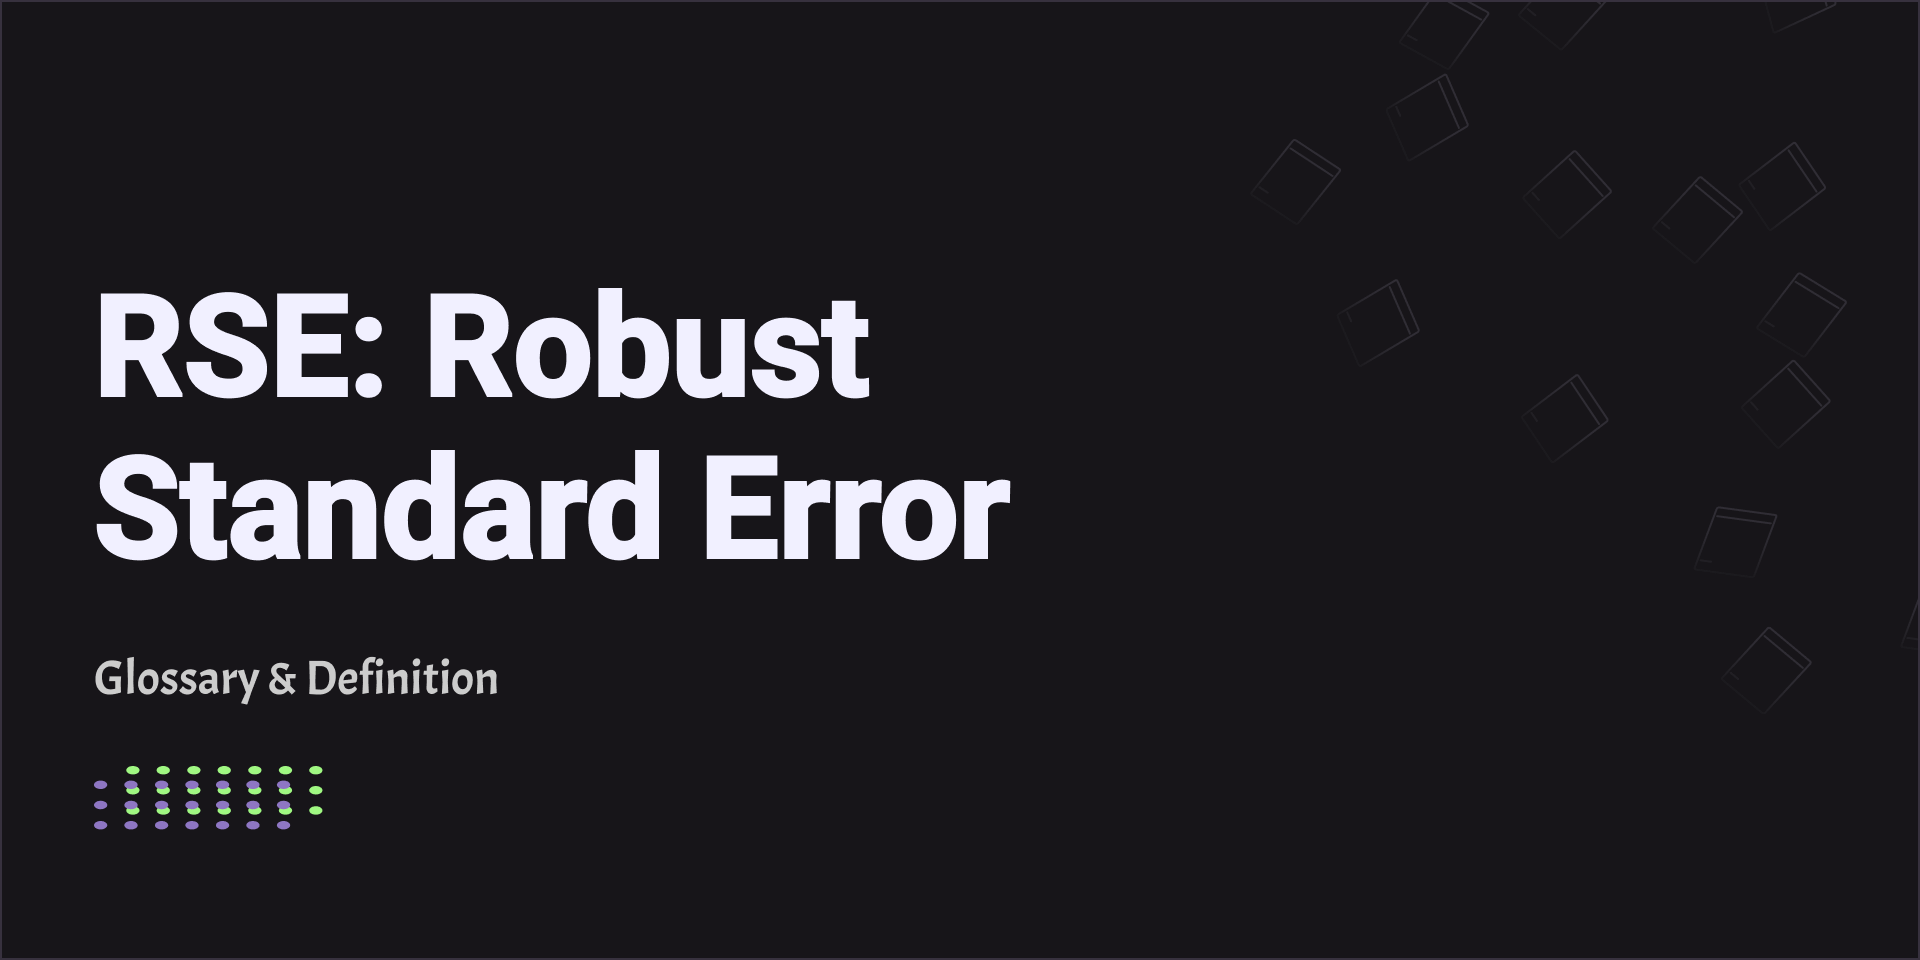 RSE: Robust Standard Error